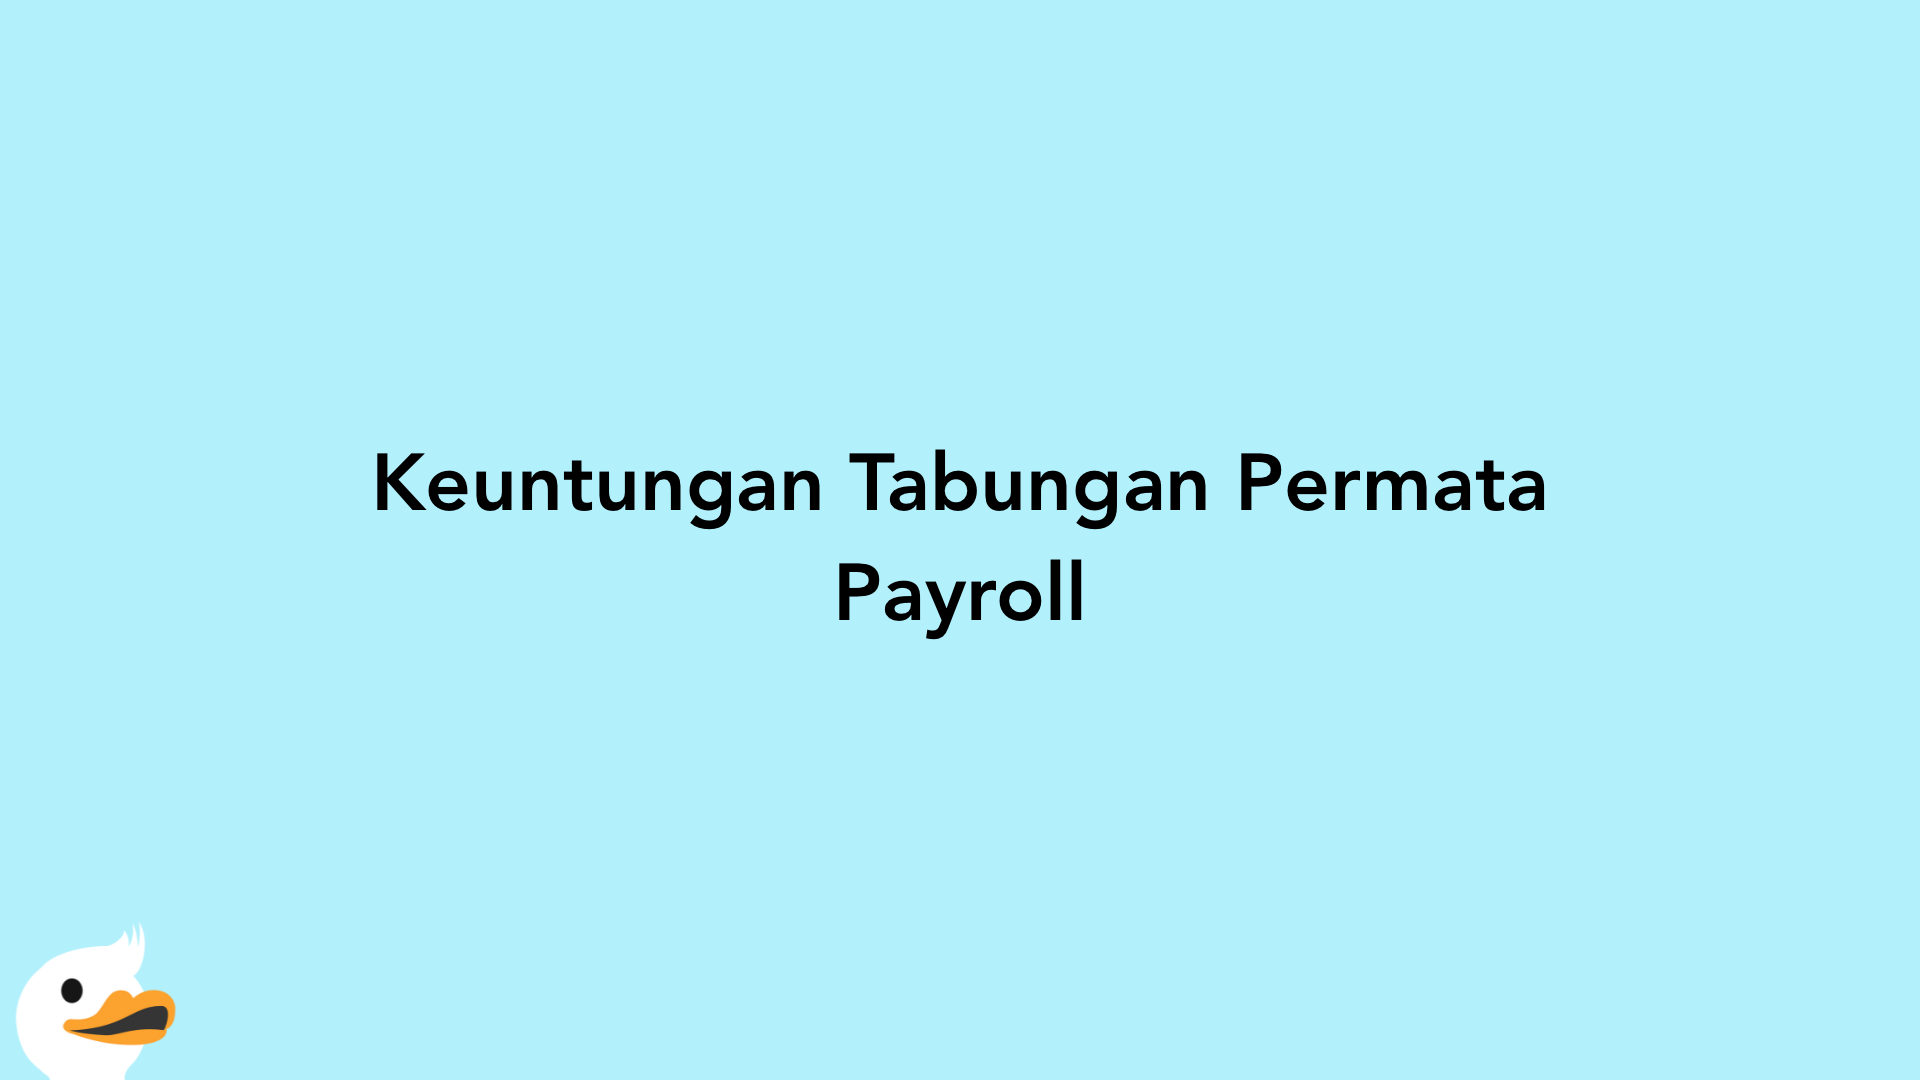 Keuntungan Tabungan Permata Payroll